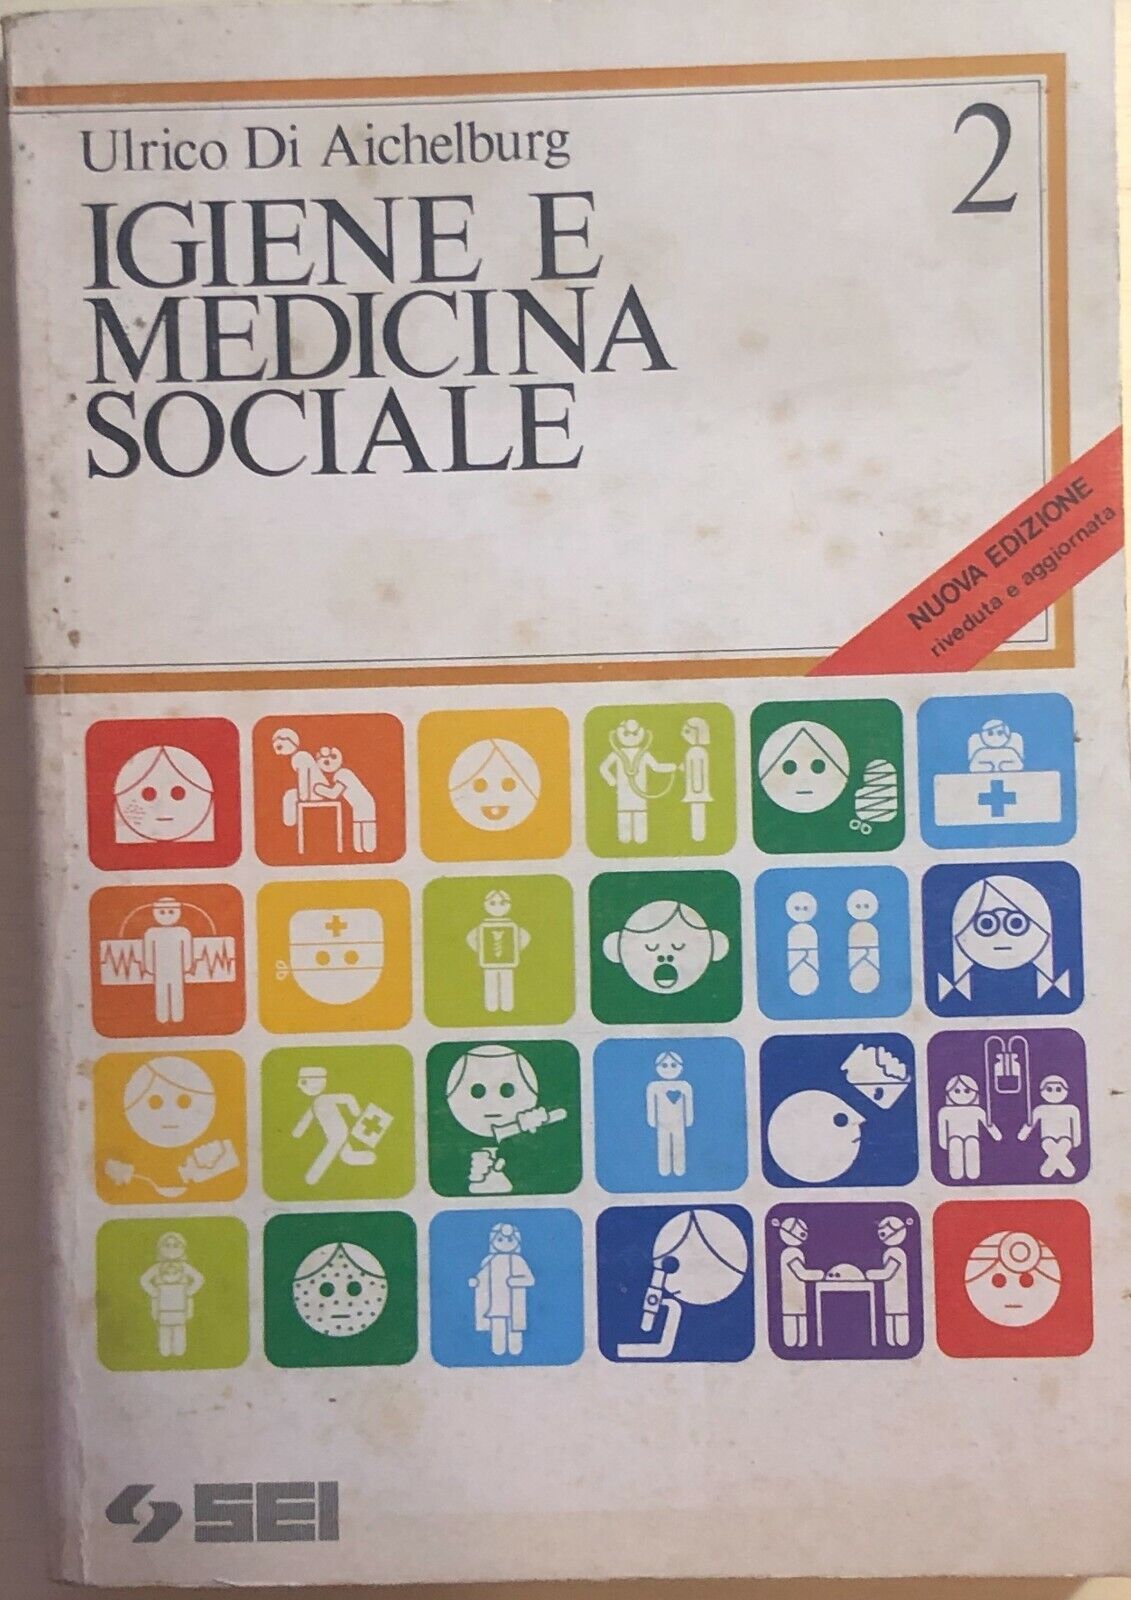 Igiene e medicina sociale 2 di Ulrico Di Aichelburg, 1987, Sei